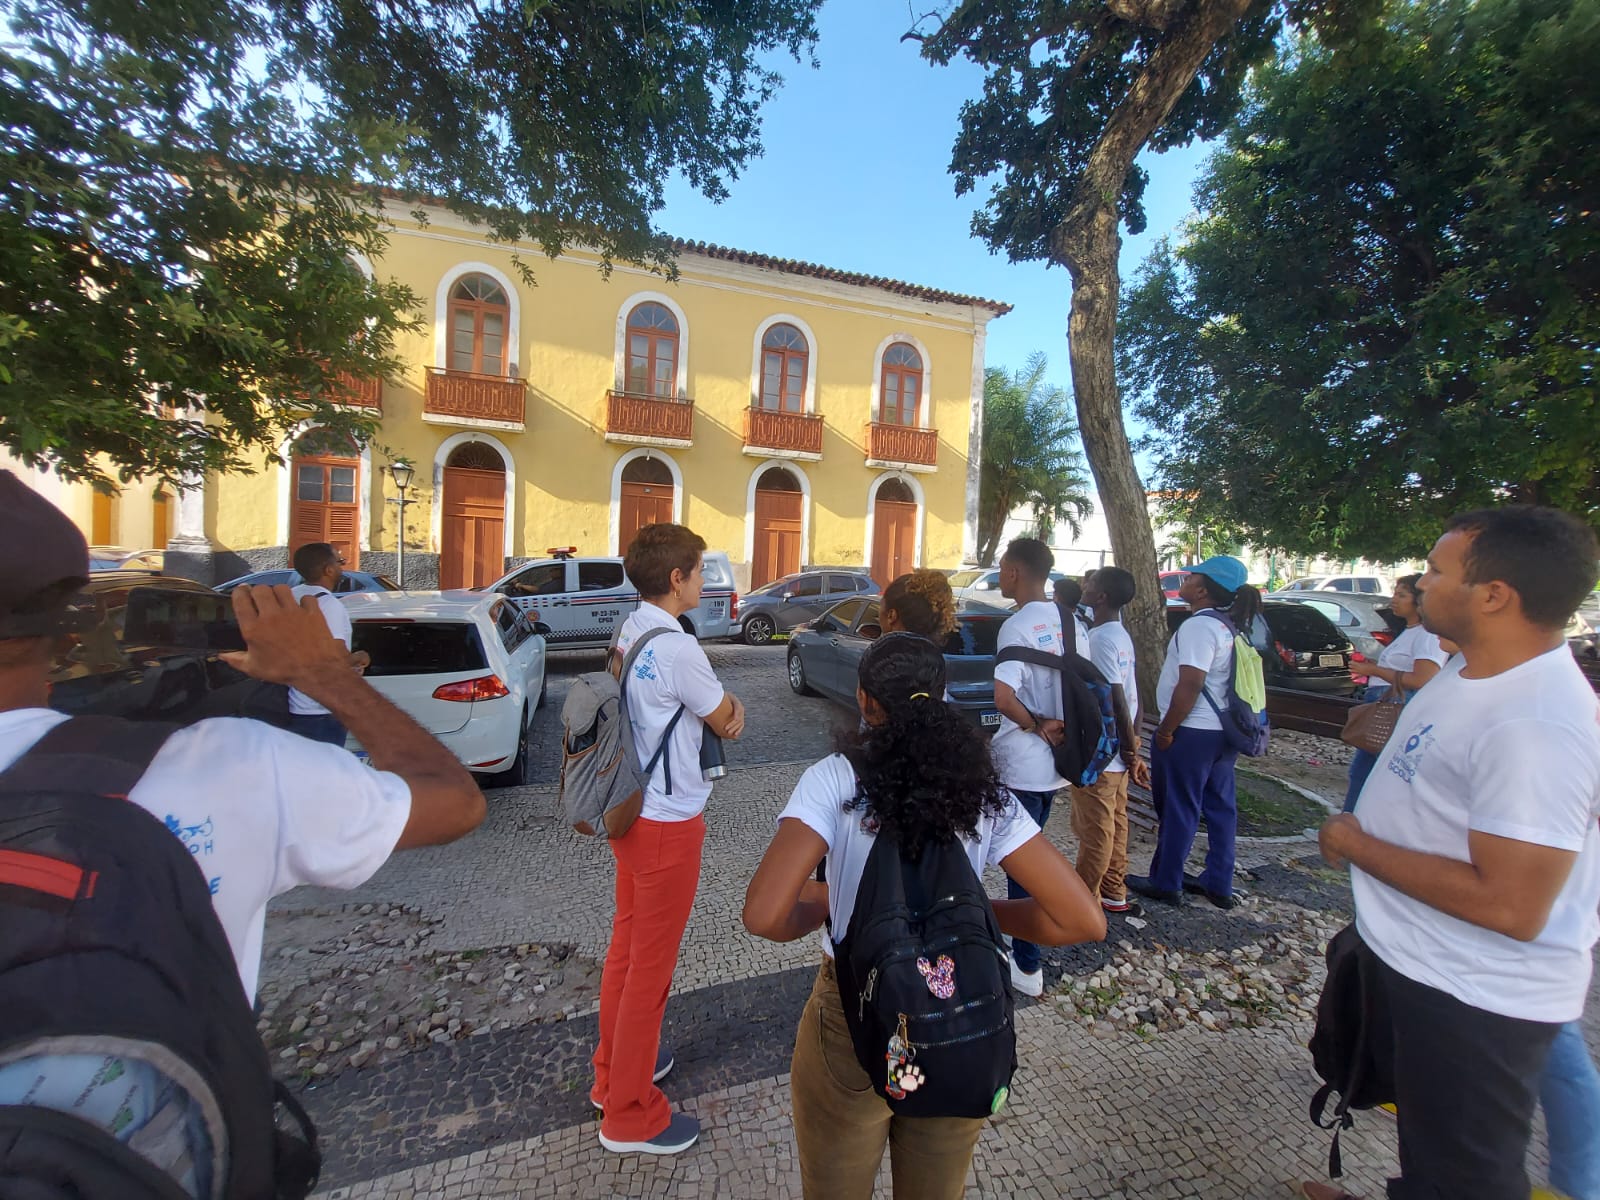 Alunos do Programa Canteiro Escola participam de Tour pelo Centro Histórico da capital